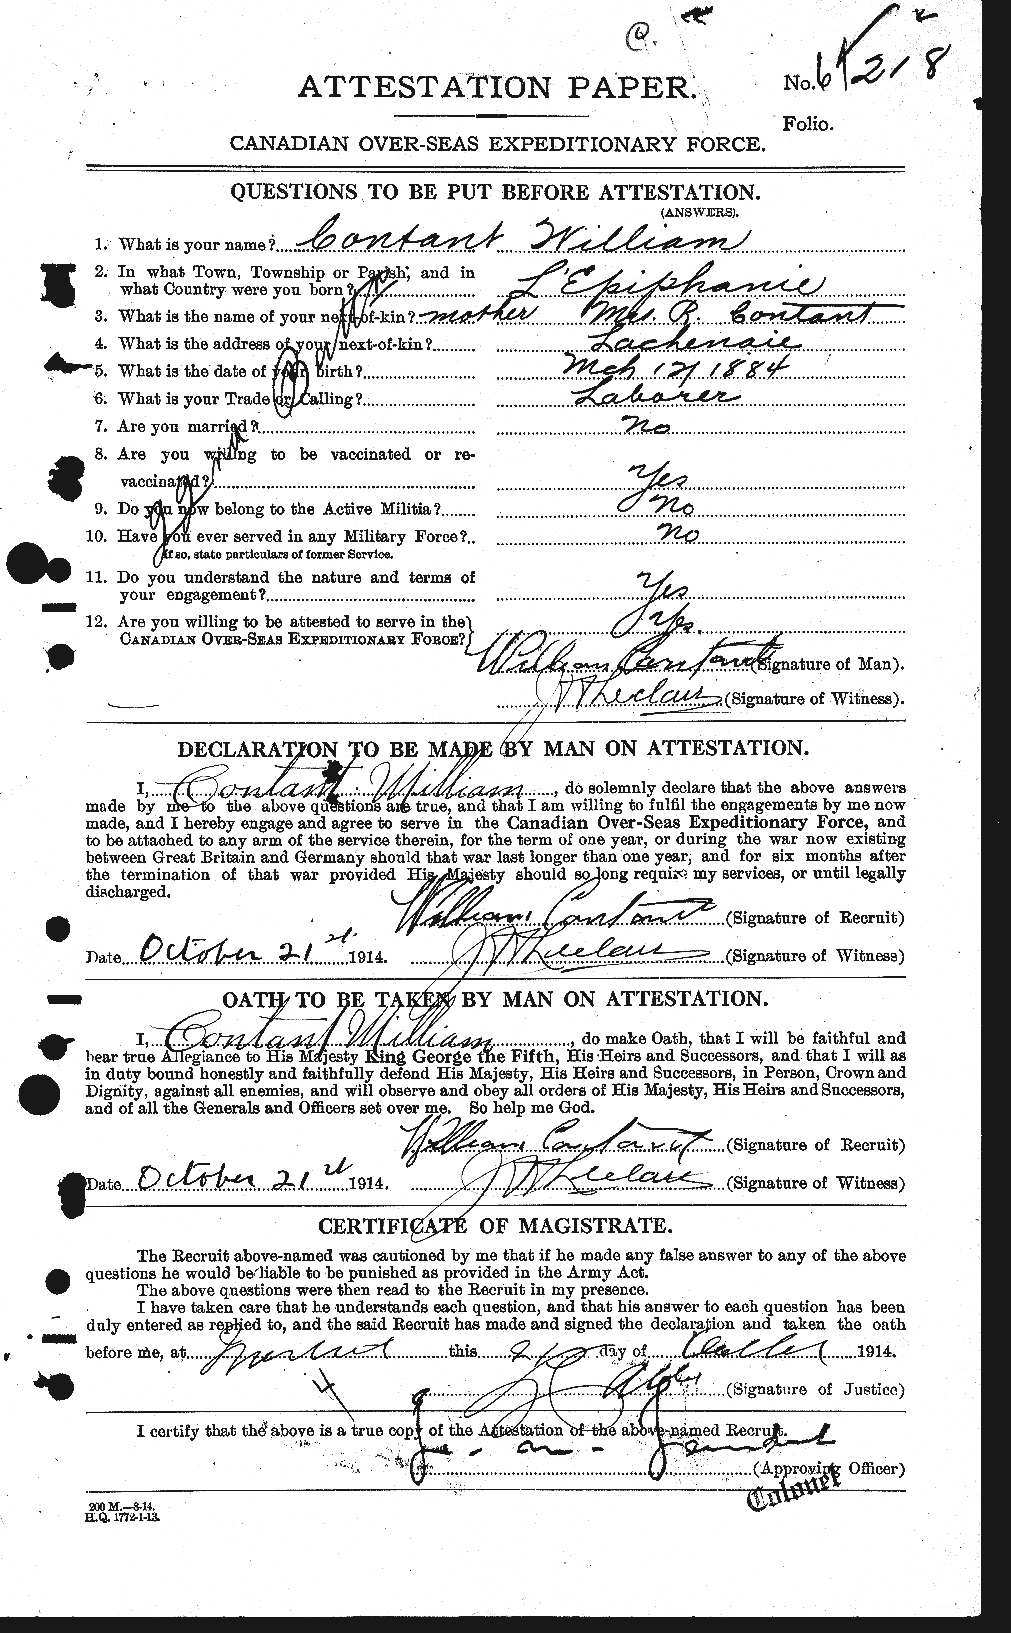 Dossiers du Personnel de la Première Guerre mondiale - CEC 073618a